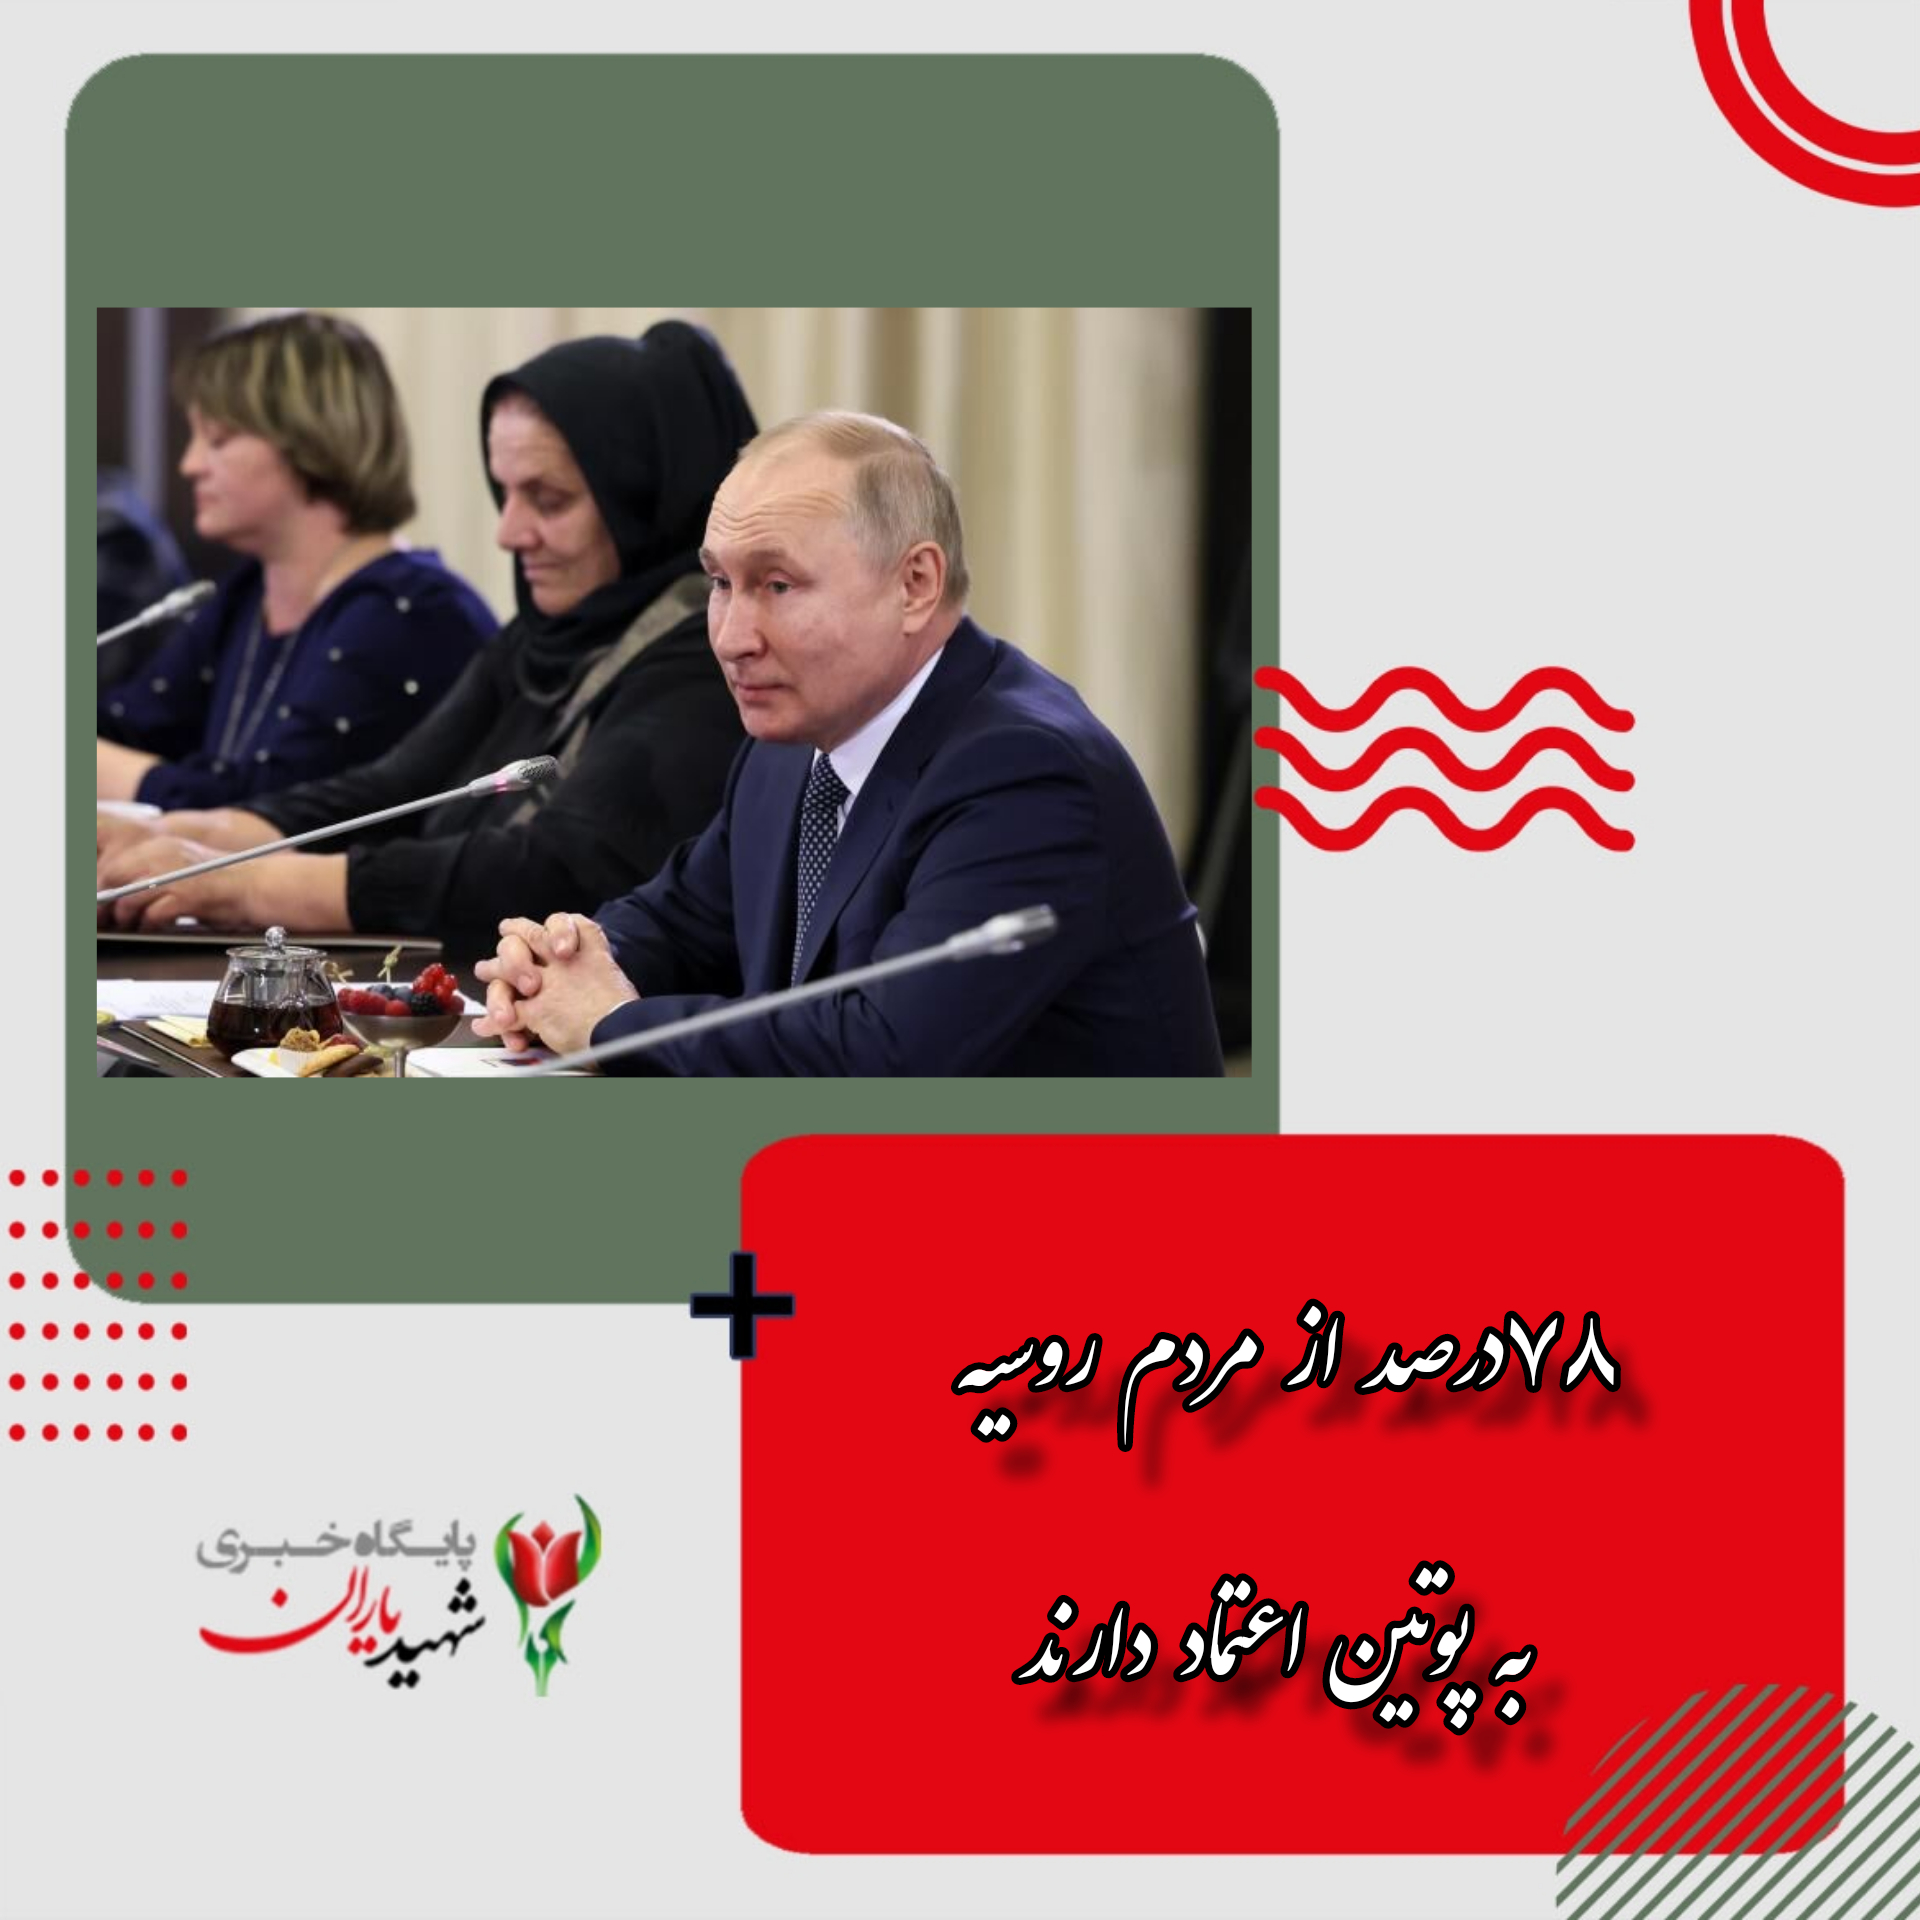 ۷۸درصد از مردم روسیه به پوتین اعتماد دارند